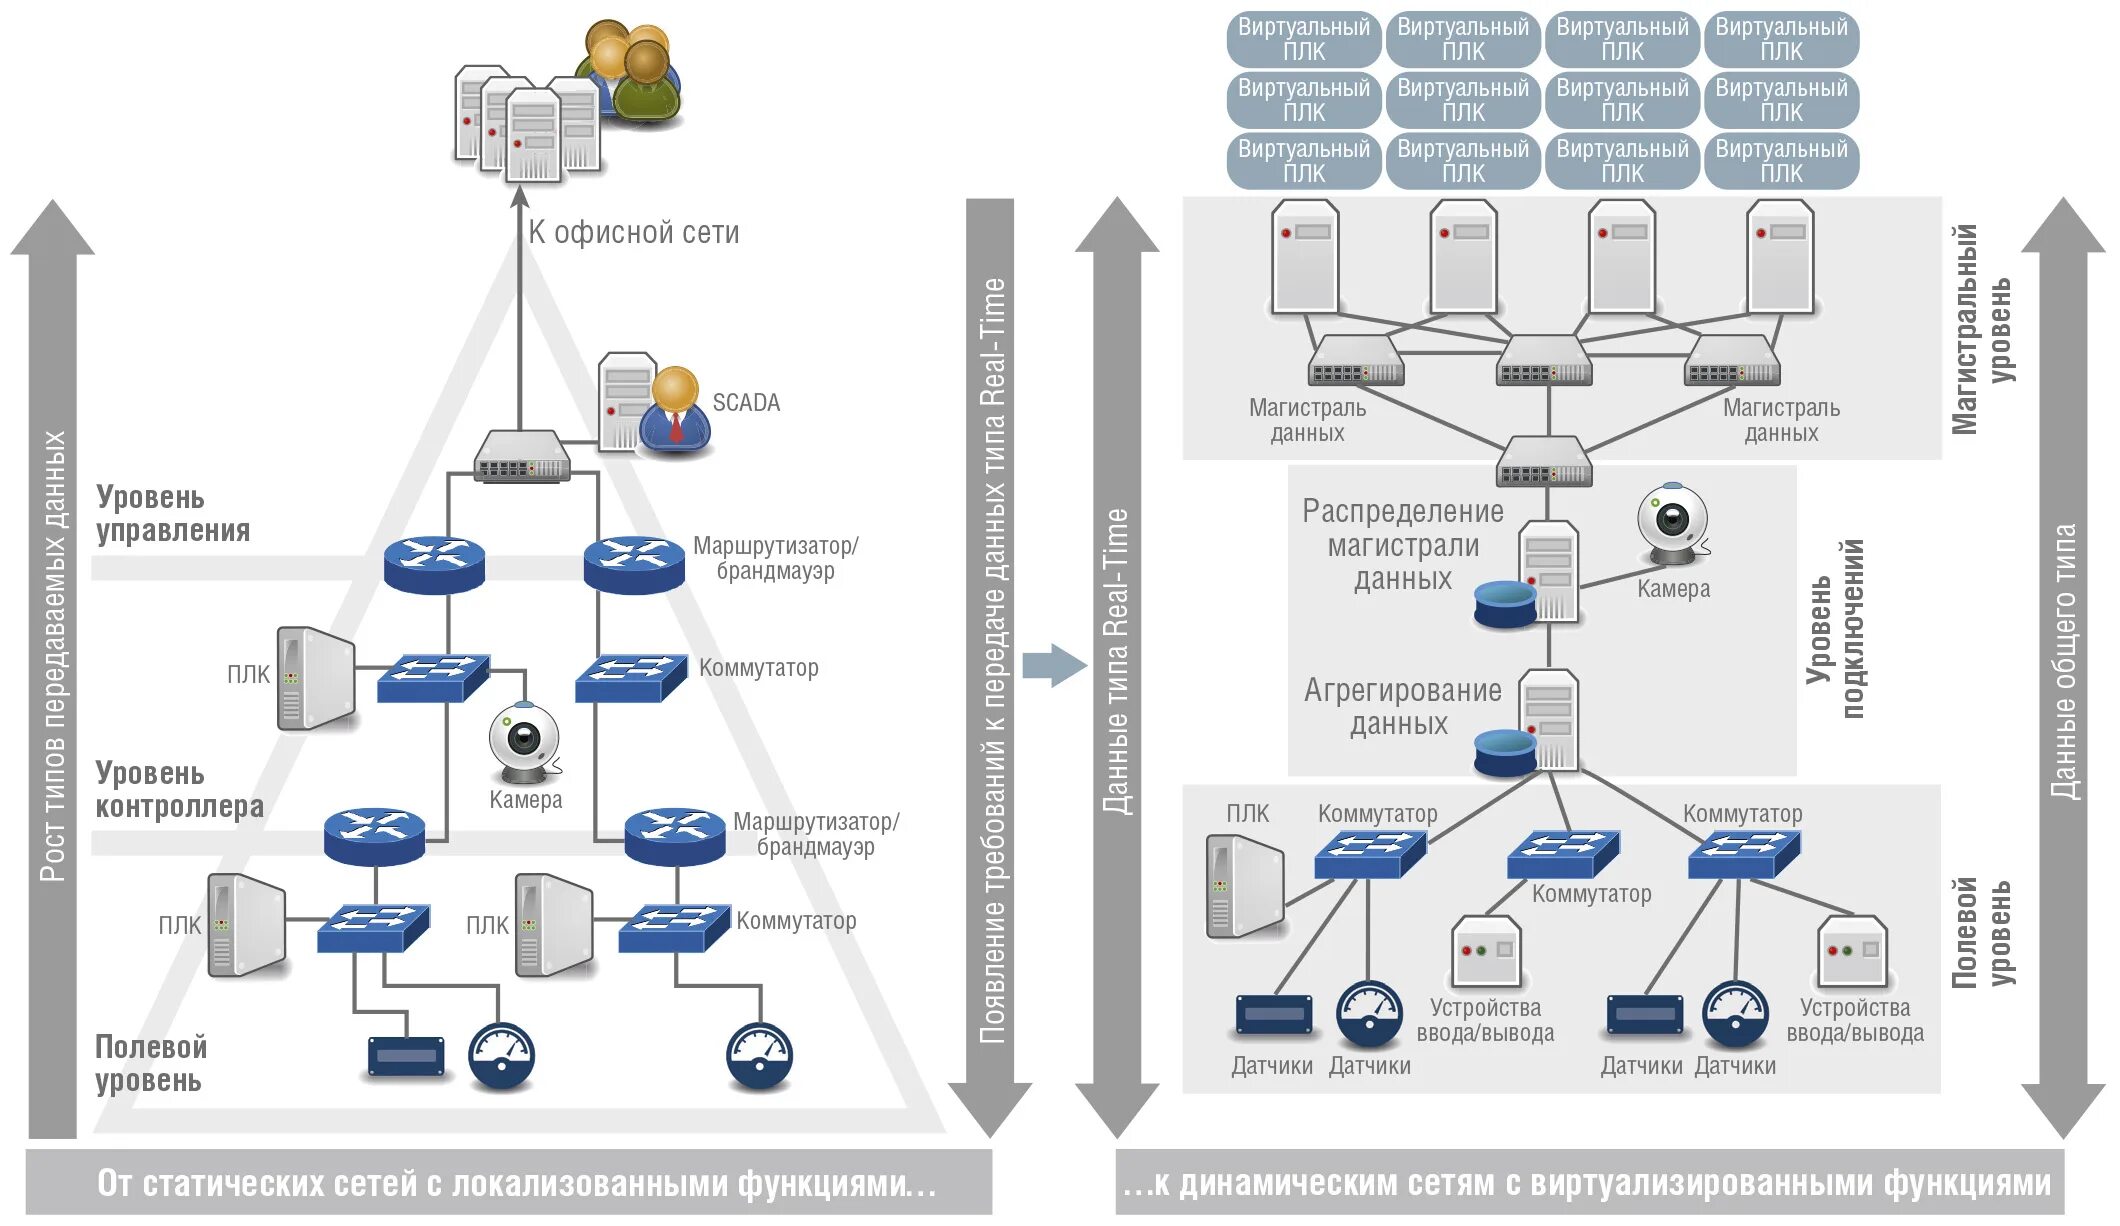 Вышло время сети. Схема промышленной сети. Интерфейсы и протоколы промышленных сетей. Протоколы управления промышленных сетей. Виды промышленных сетей.